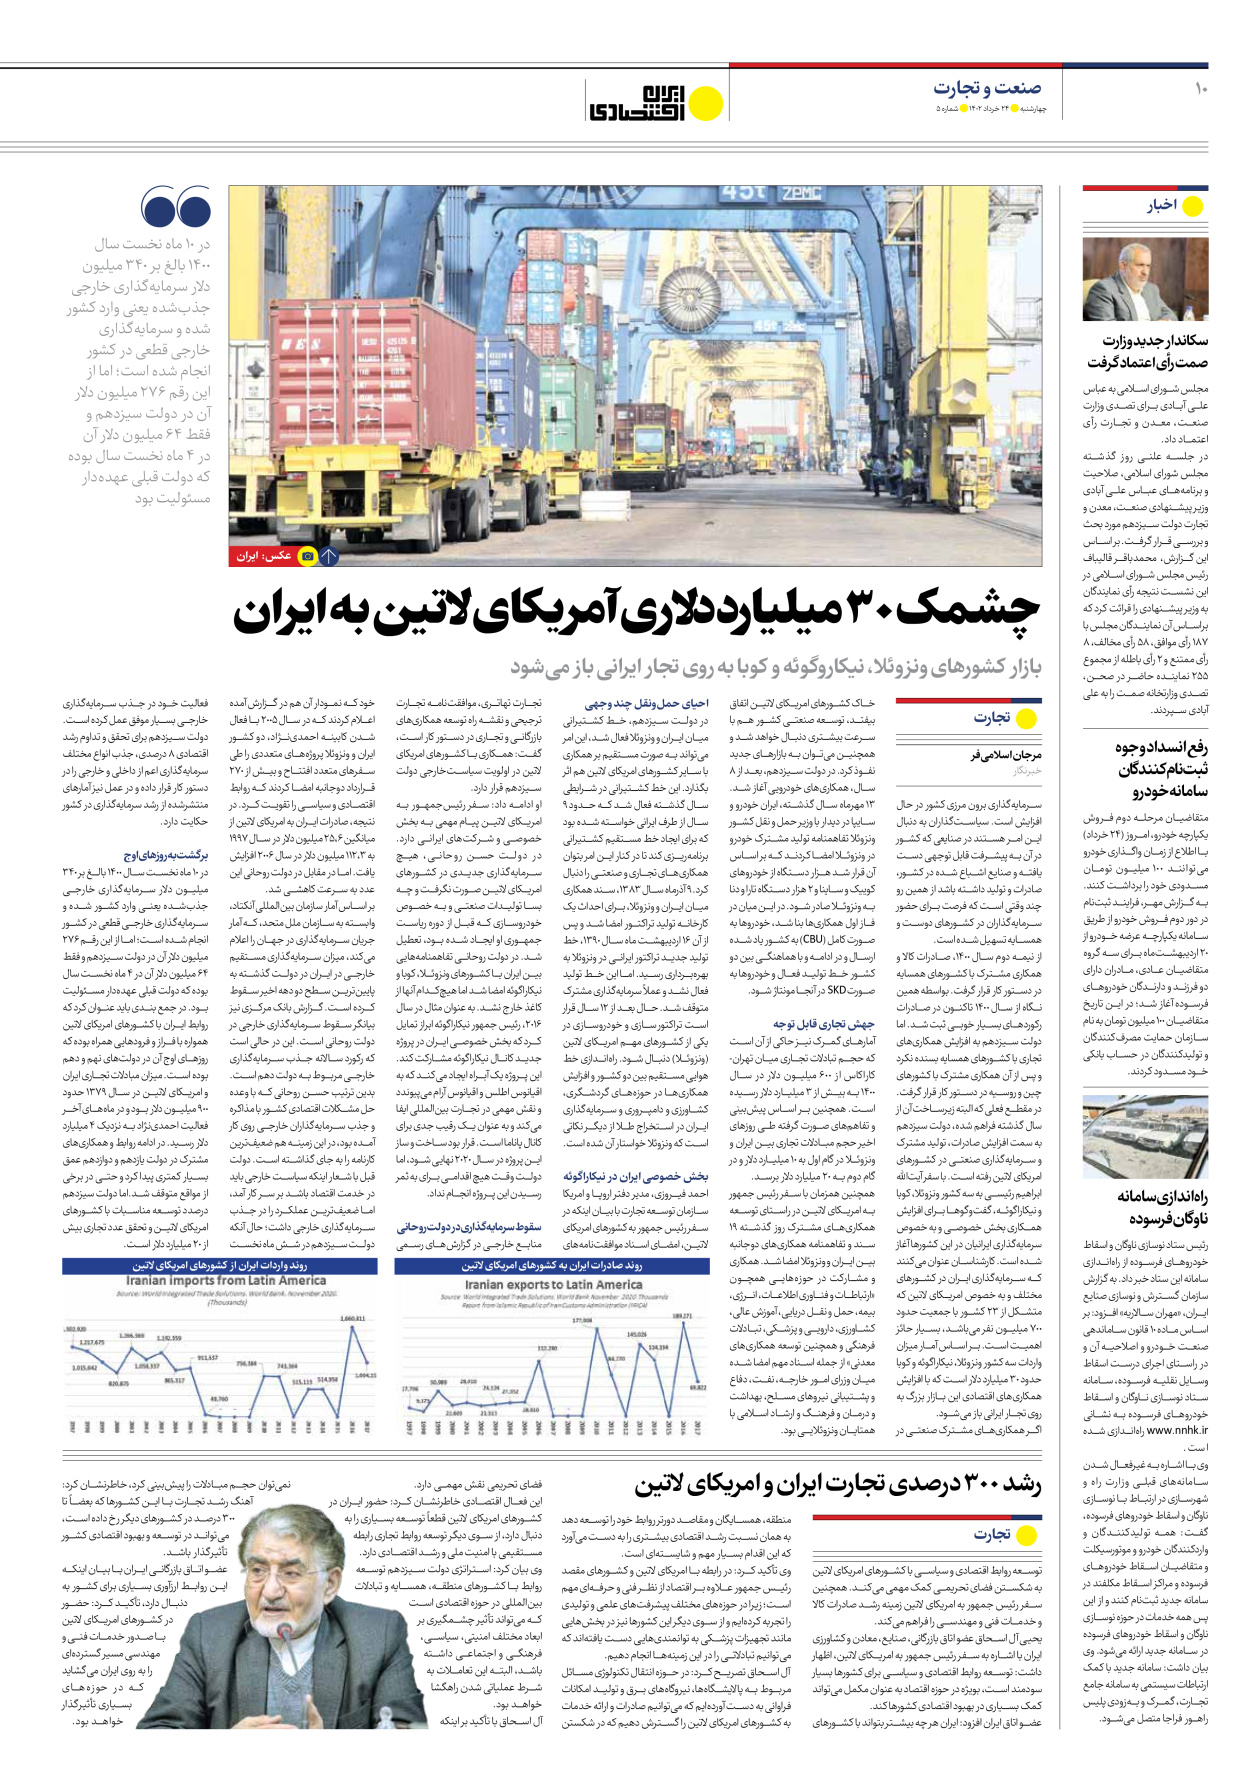 روزنامه ایران اقتصادی - شماره پنج - ۲۴ خرداد ۱۴۰۲ - صفحه ۱۰